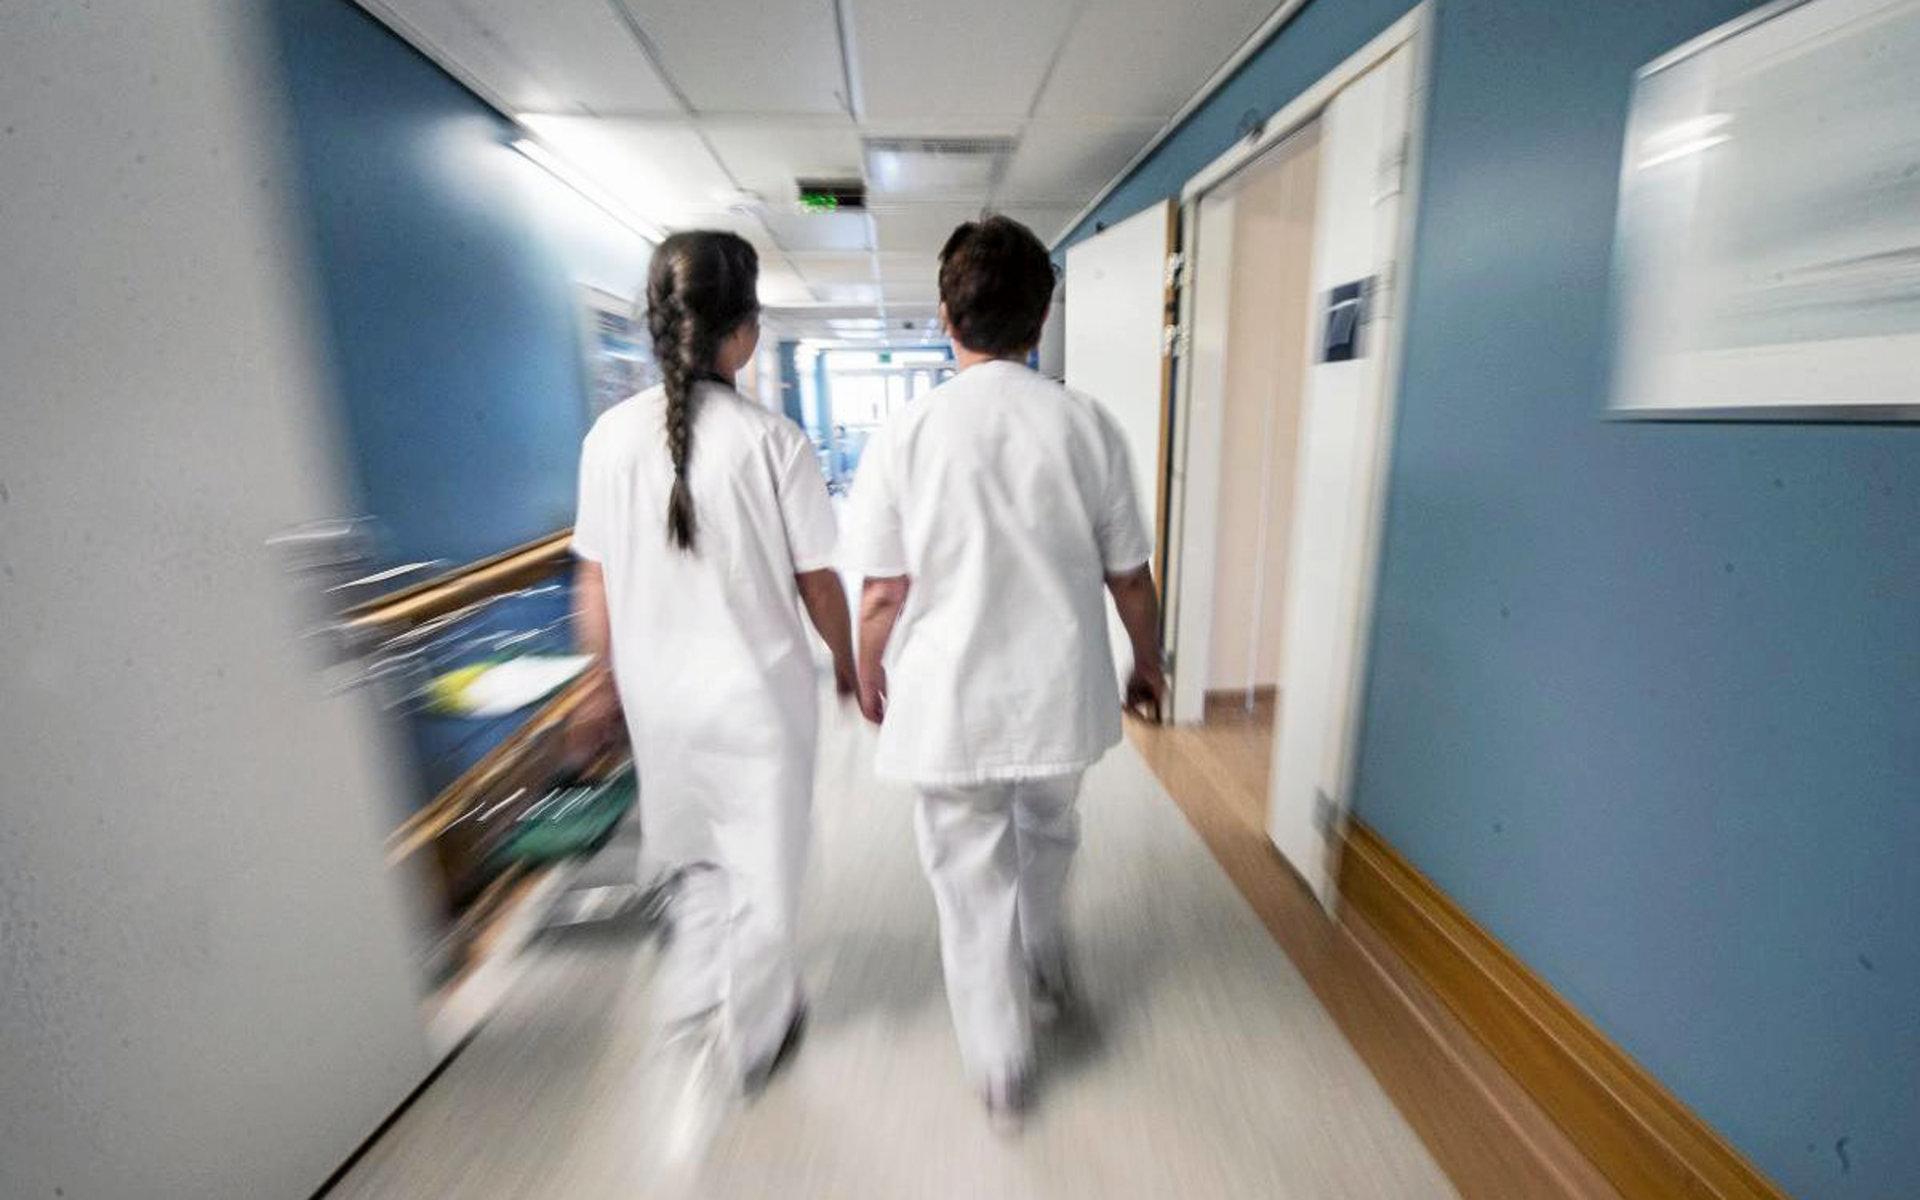 Västra Götalandsregionen har beräknat att den extra satsningen på yrkesgrupper som undersköterskor, skötare och ambulanssjukvårdare kommer att kosta cirka 117 miljoner kronor i år från och med den 1 maj. Helårskostnaden motsvarar cirka 175 miljoner kronor. Genrebild.